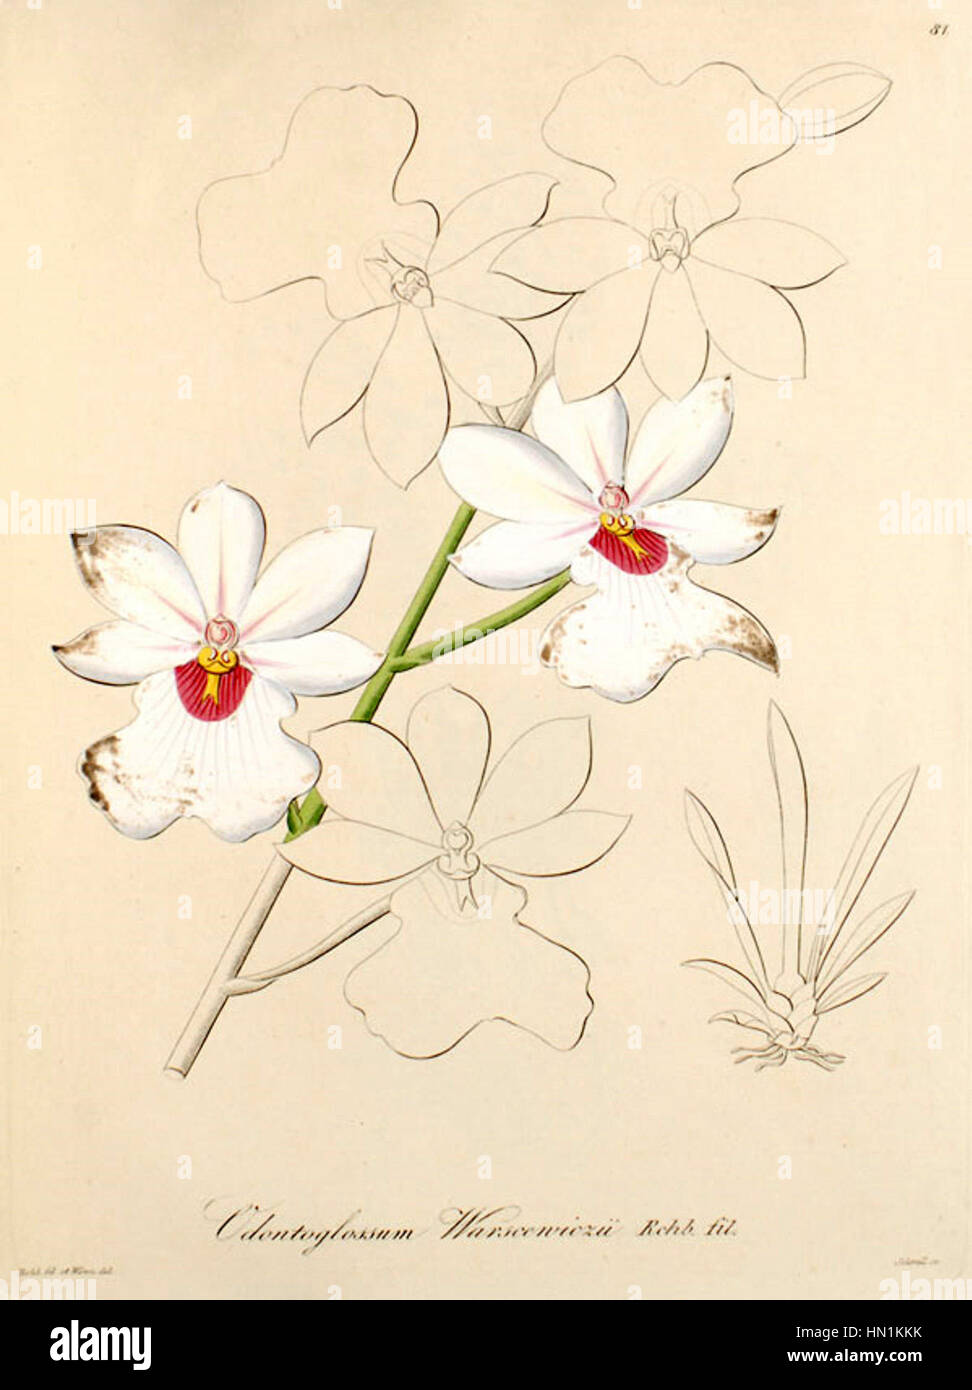 Miltoniopsis warszewiczii (as Odontoglossum warszewiczii) - Xenia vol 1 pl 81 (1858) Stock Photo